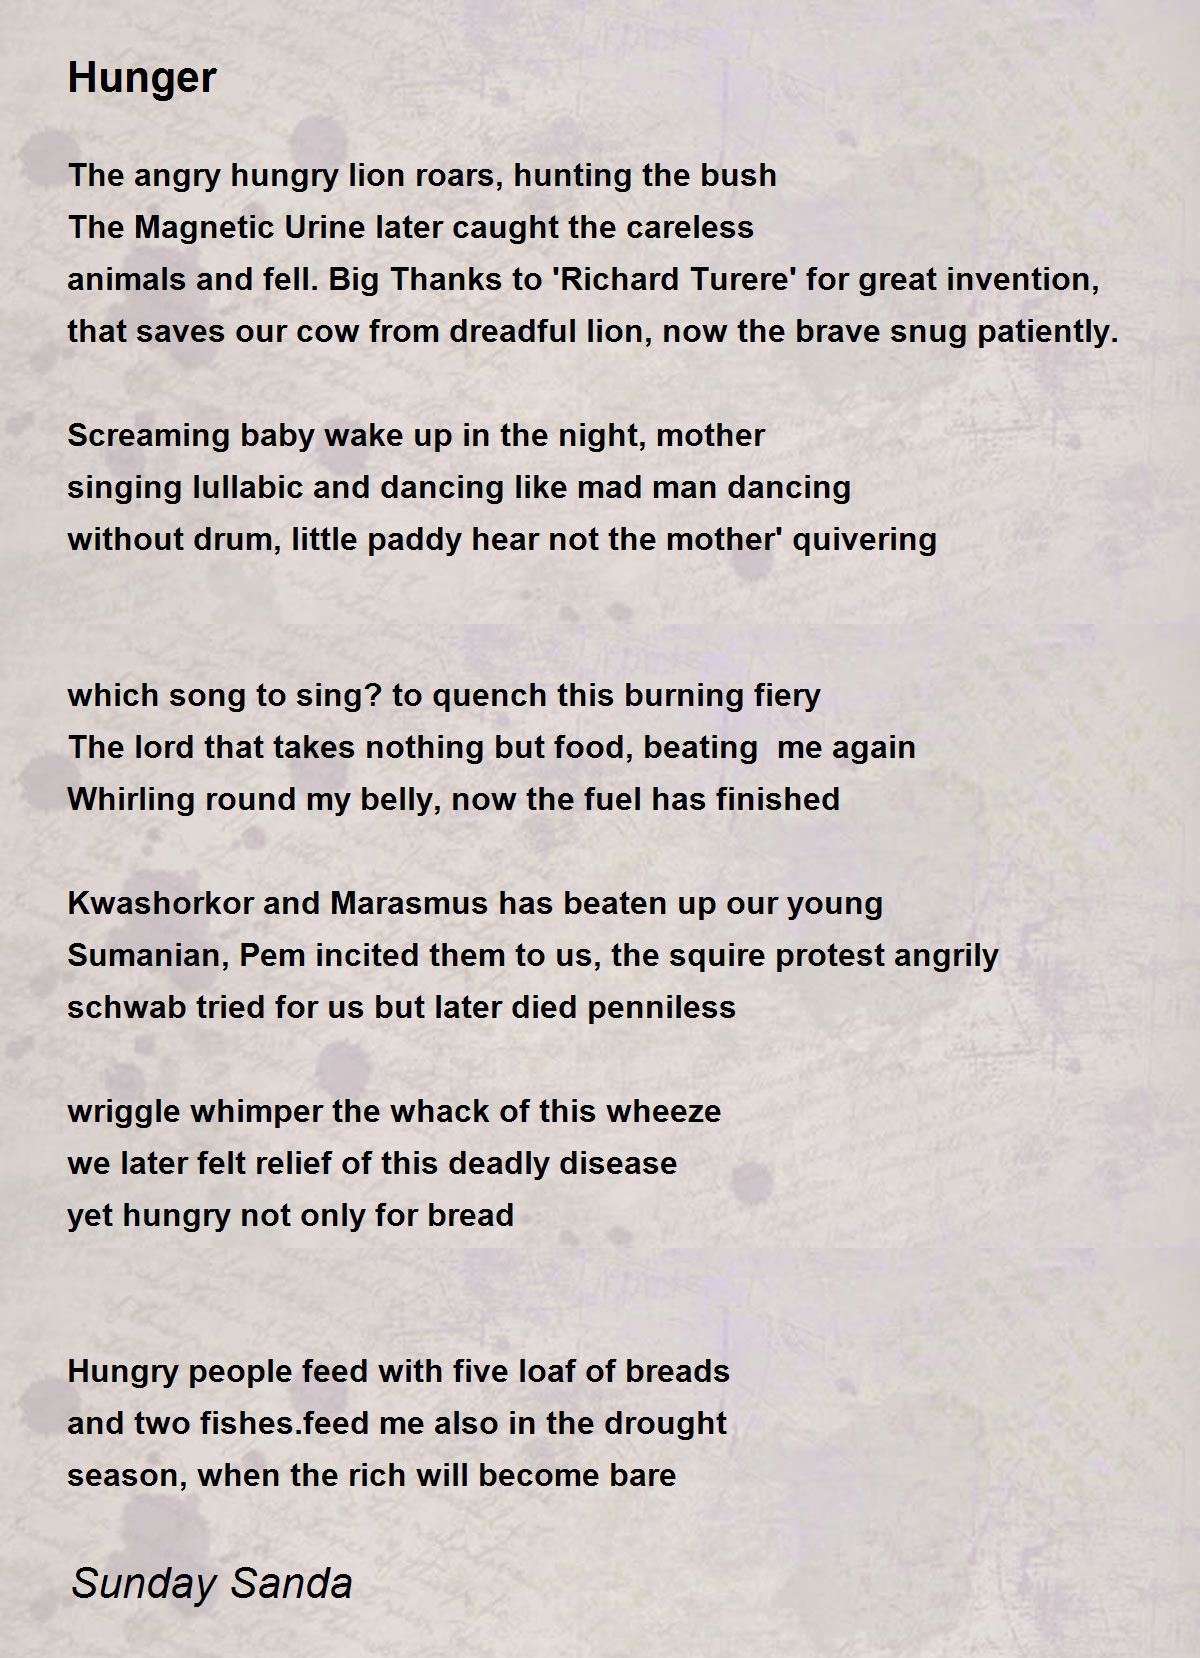 Hunger - Hunger Poem by Sunday Sanda